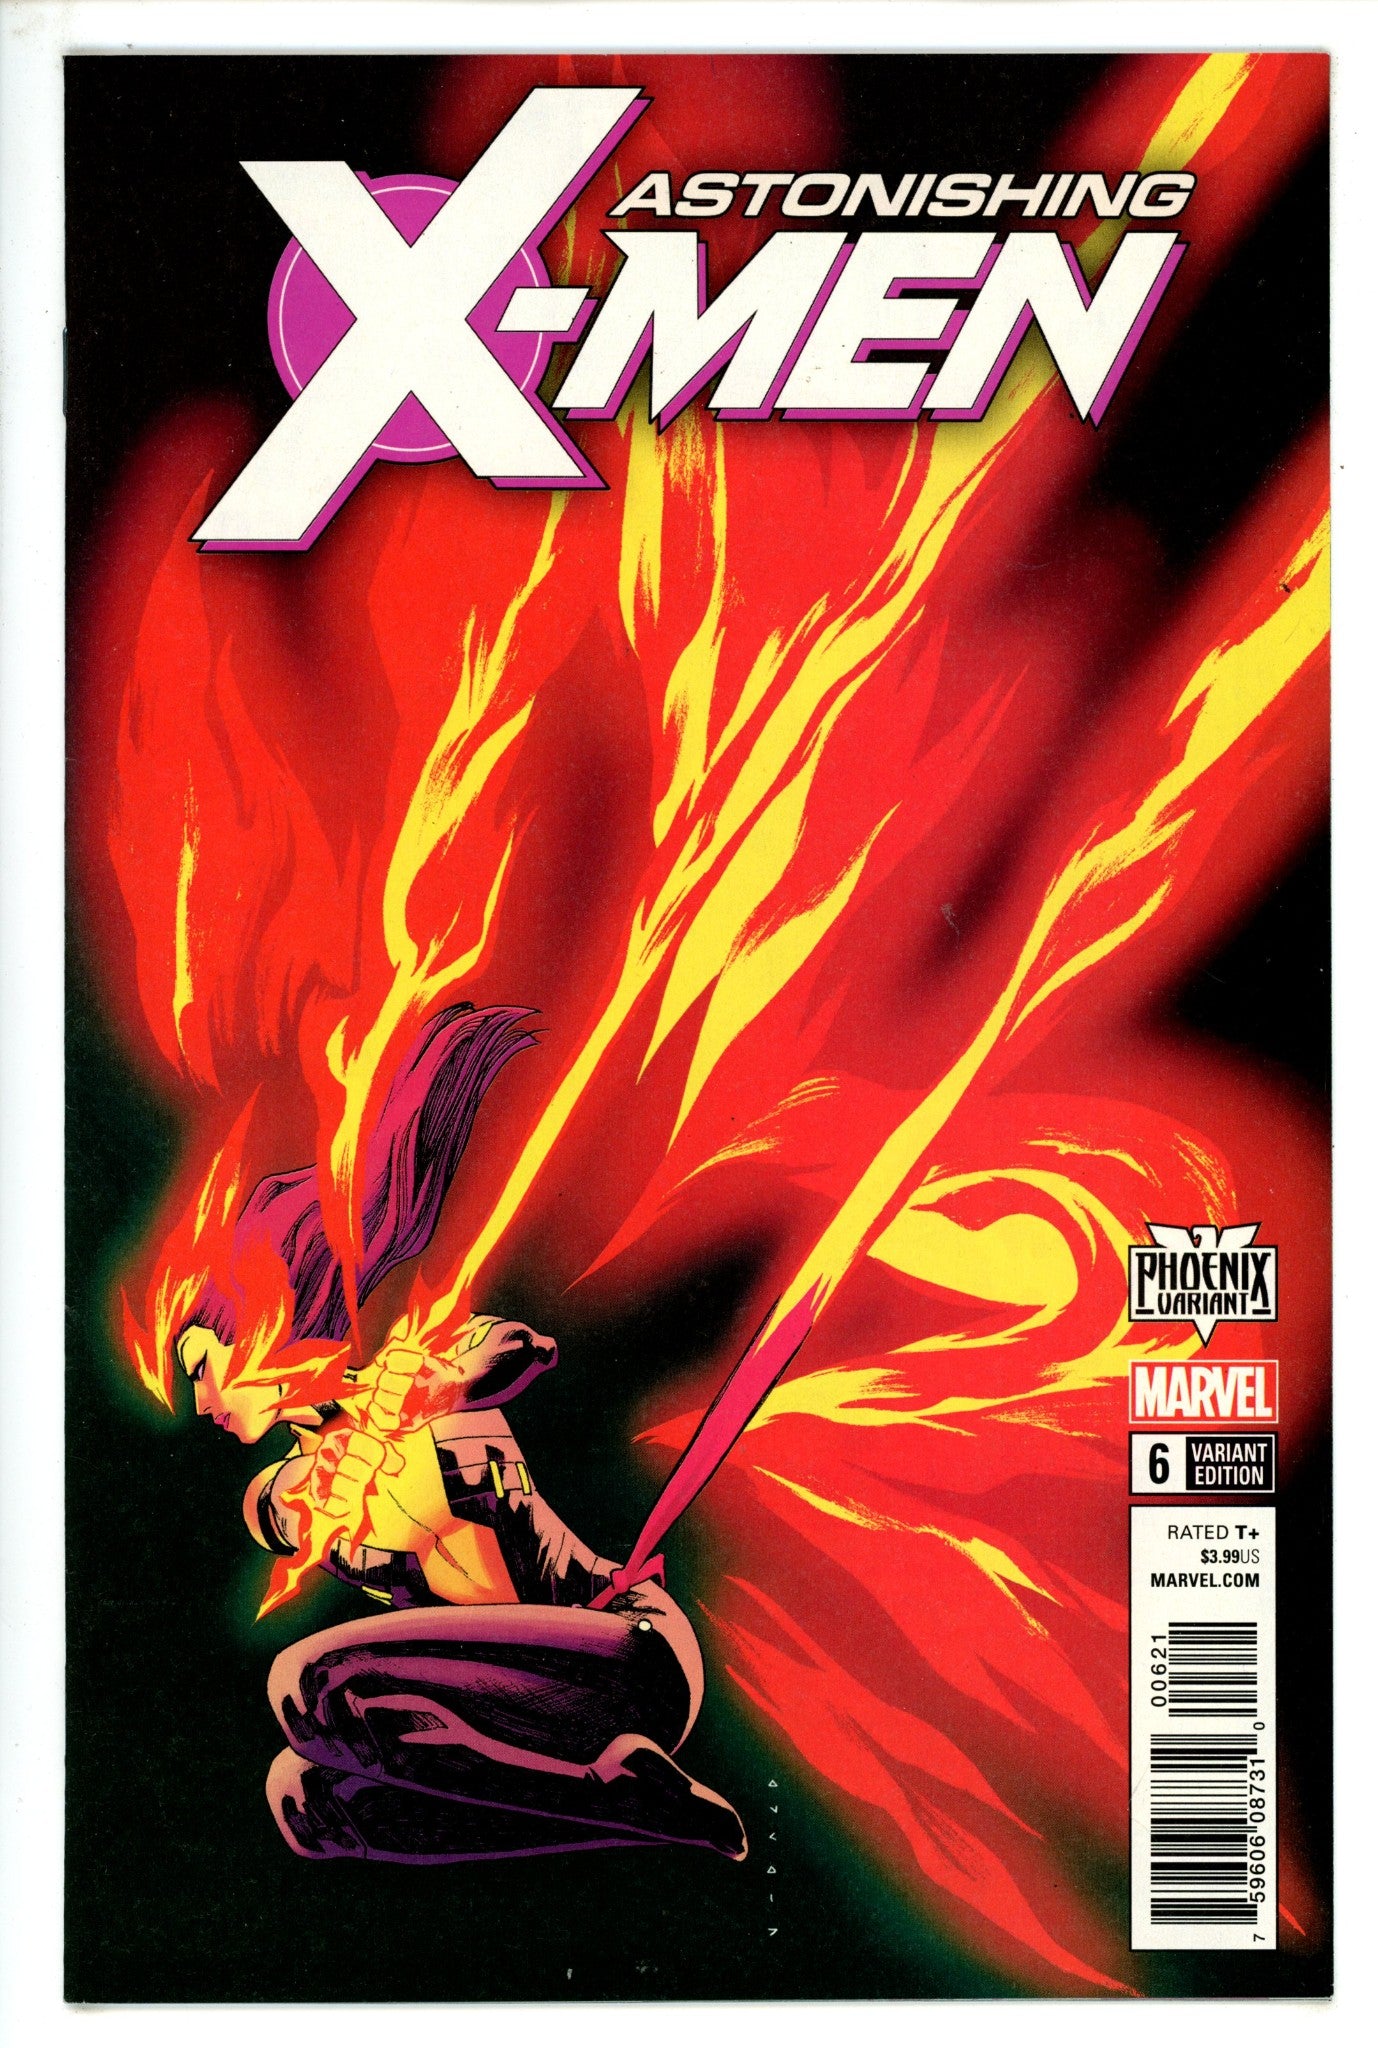 Astonishing X-Men Vol 4 6 Anka Variant (2018)